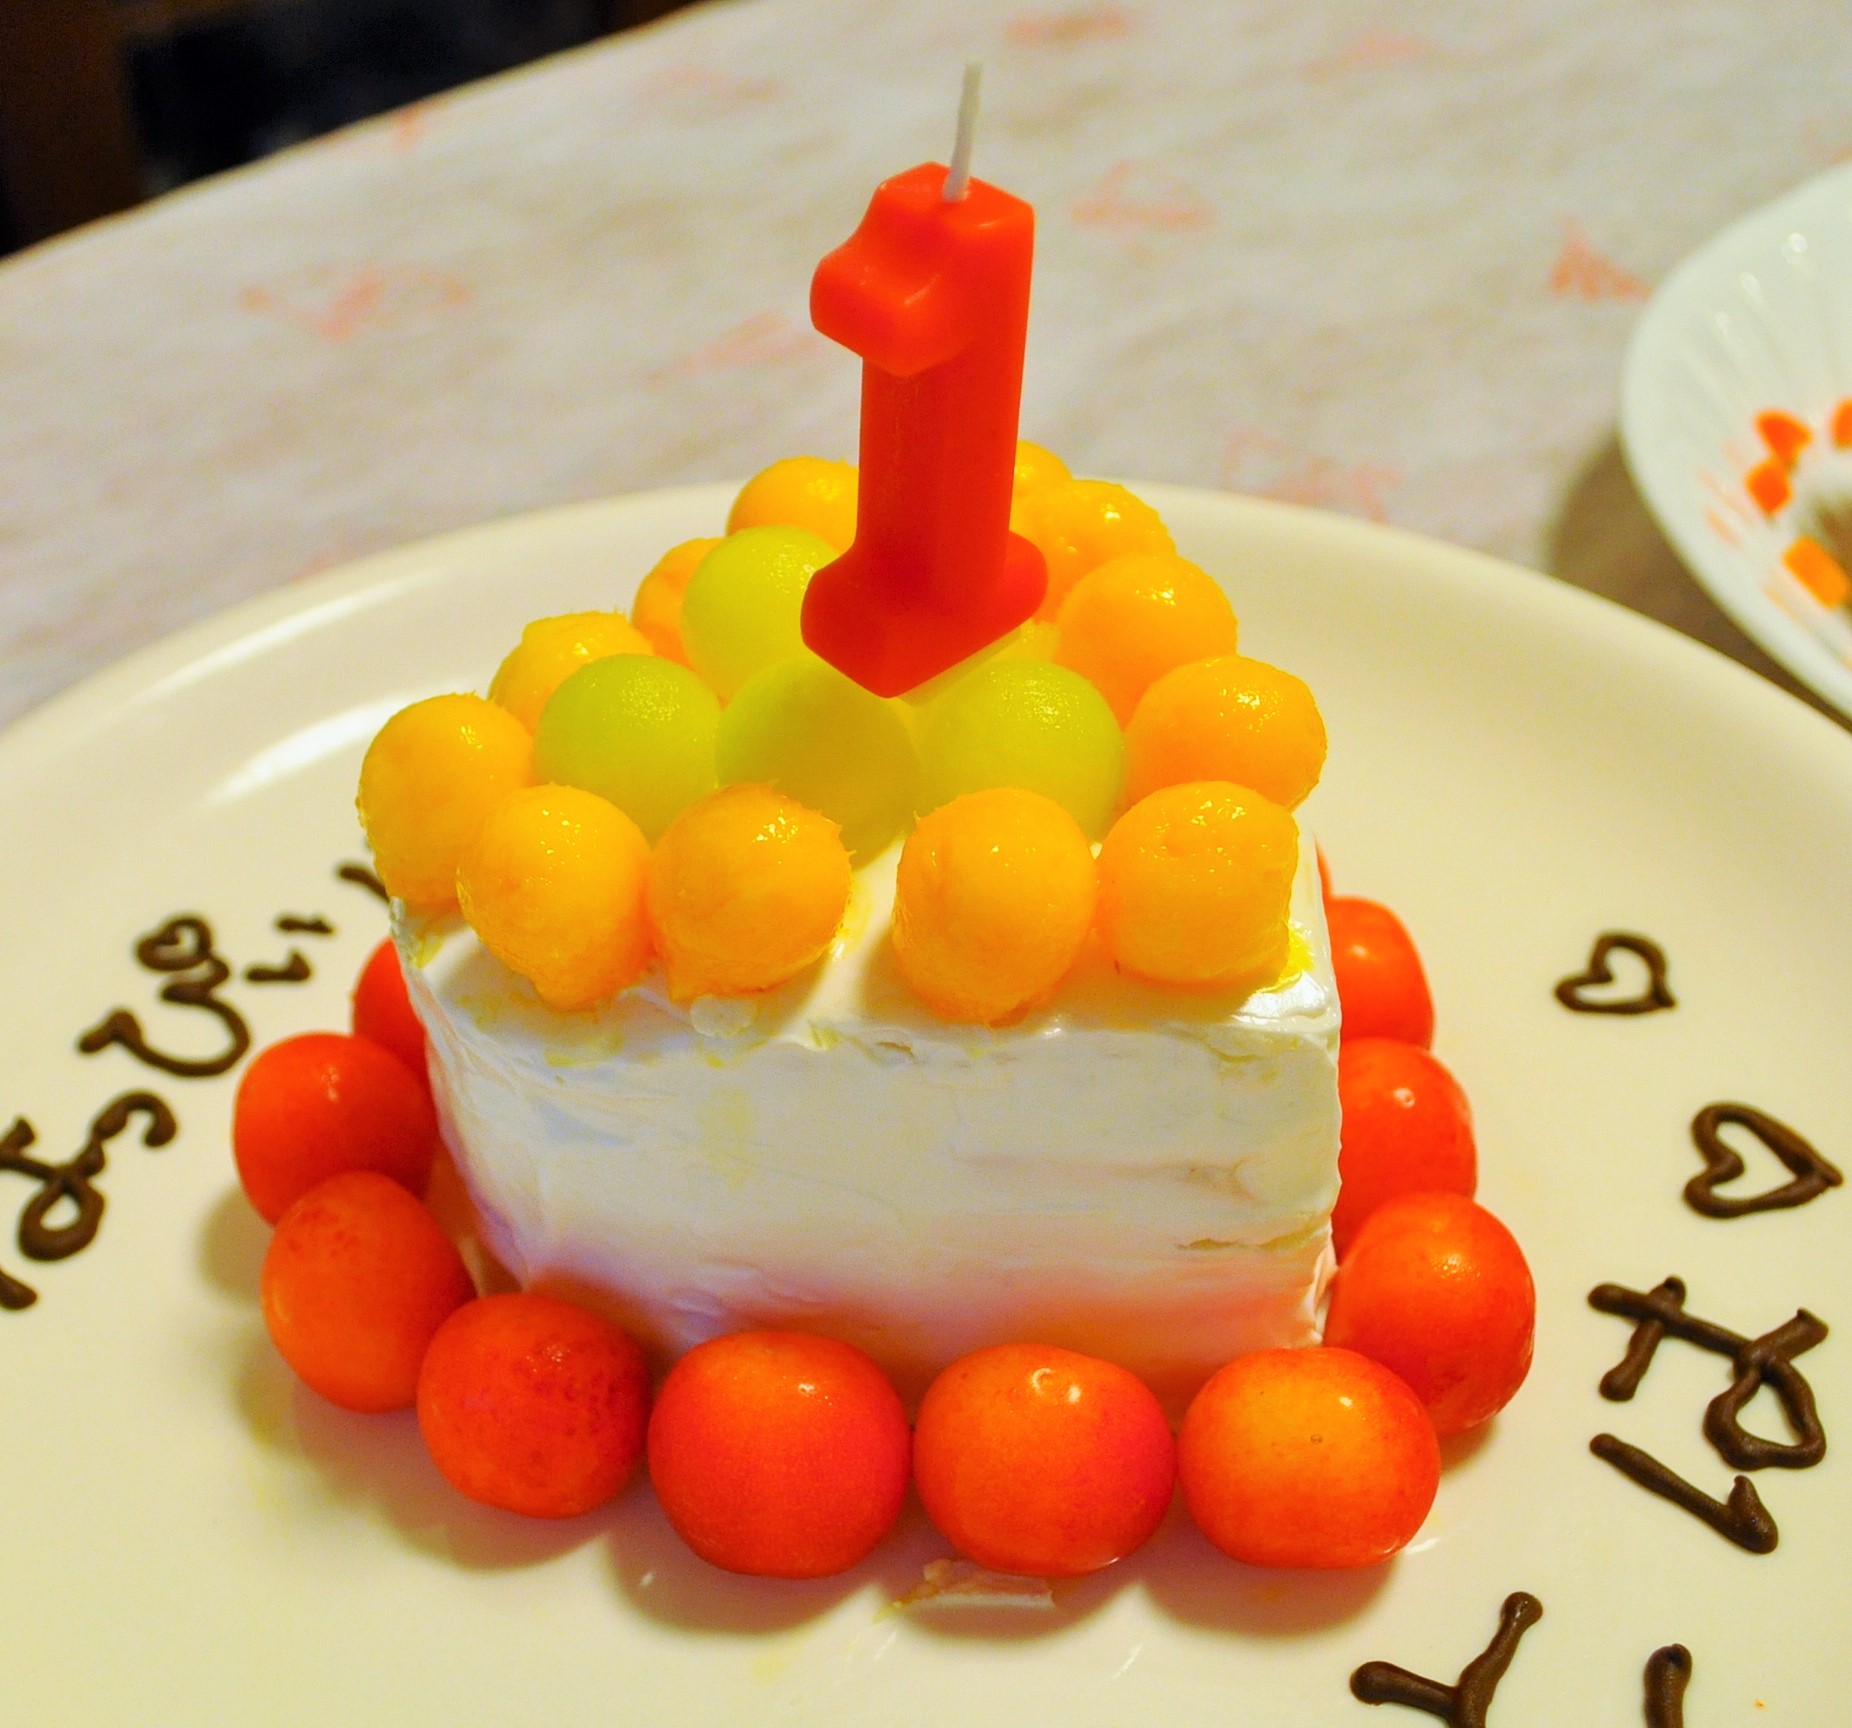 一歳の誕生日にするイベント お祝いケーキや料理はどうする のんびりスローな毎日を